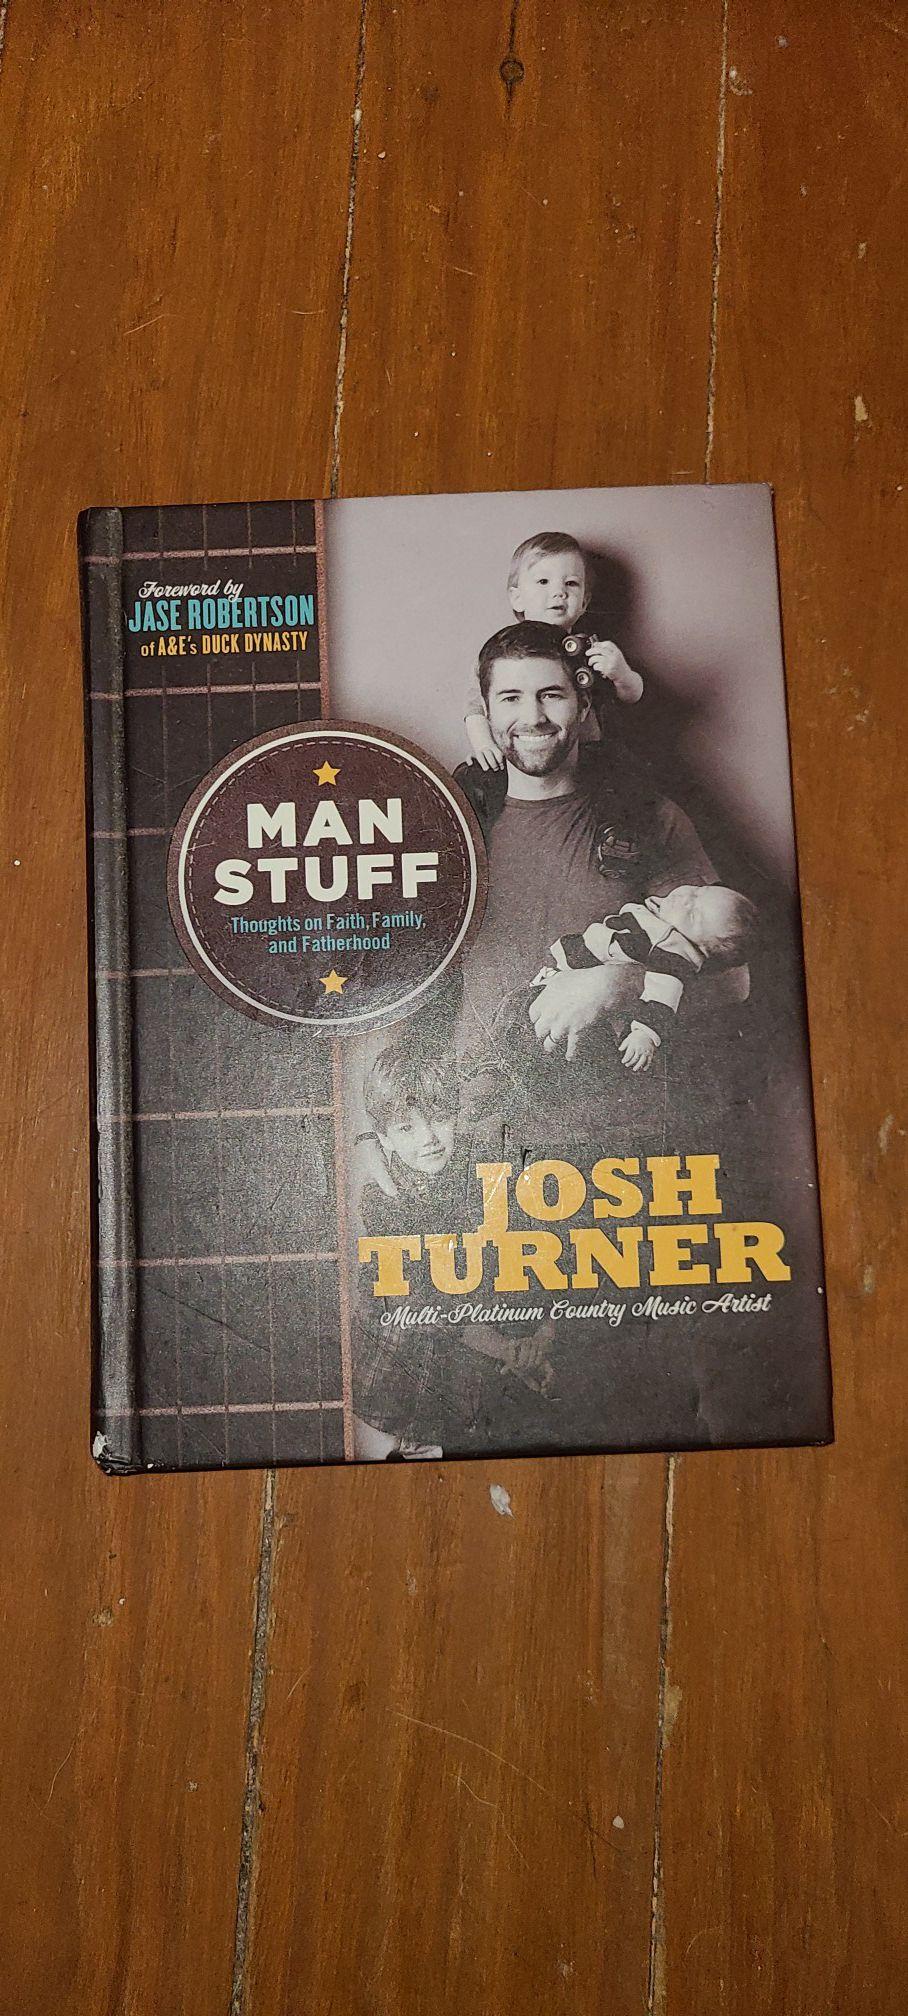 Josh Turner book